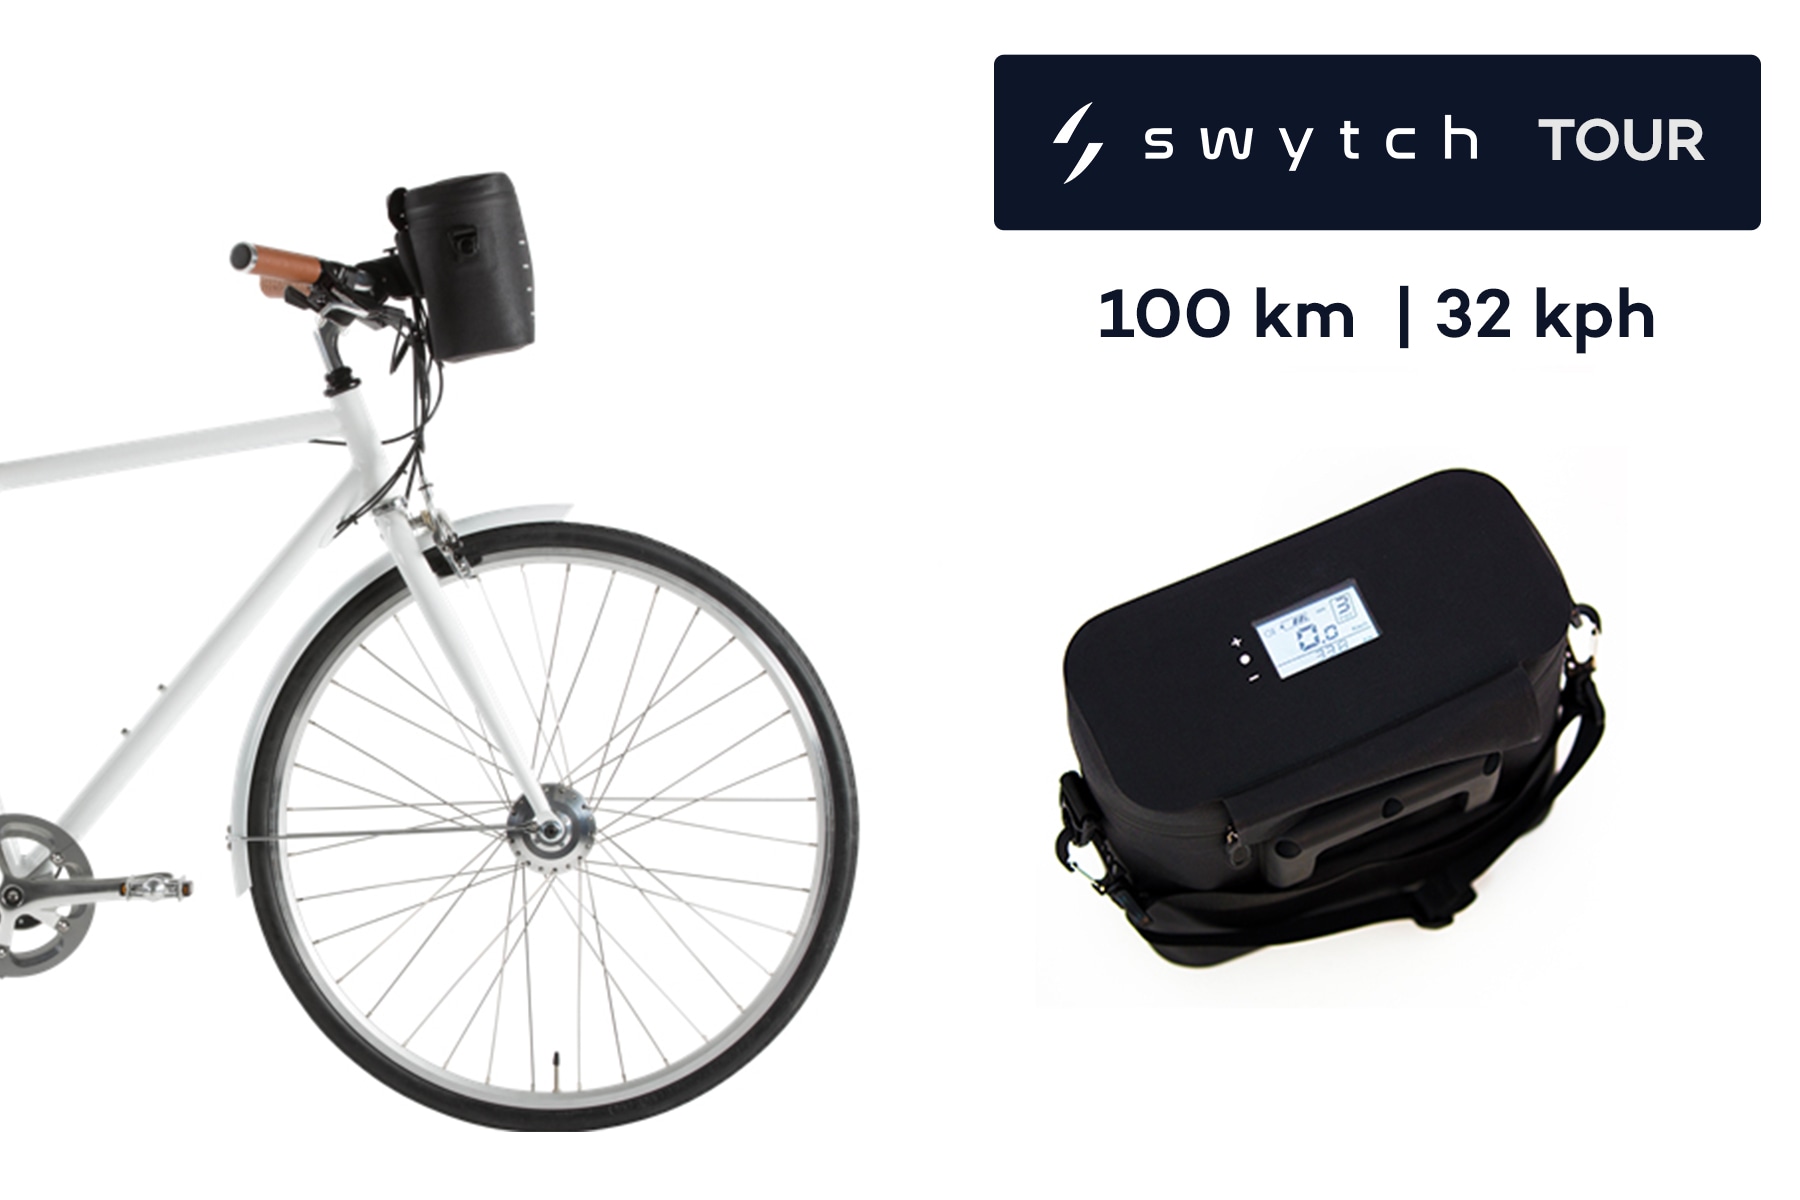 swytch bike kit uk